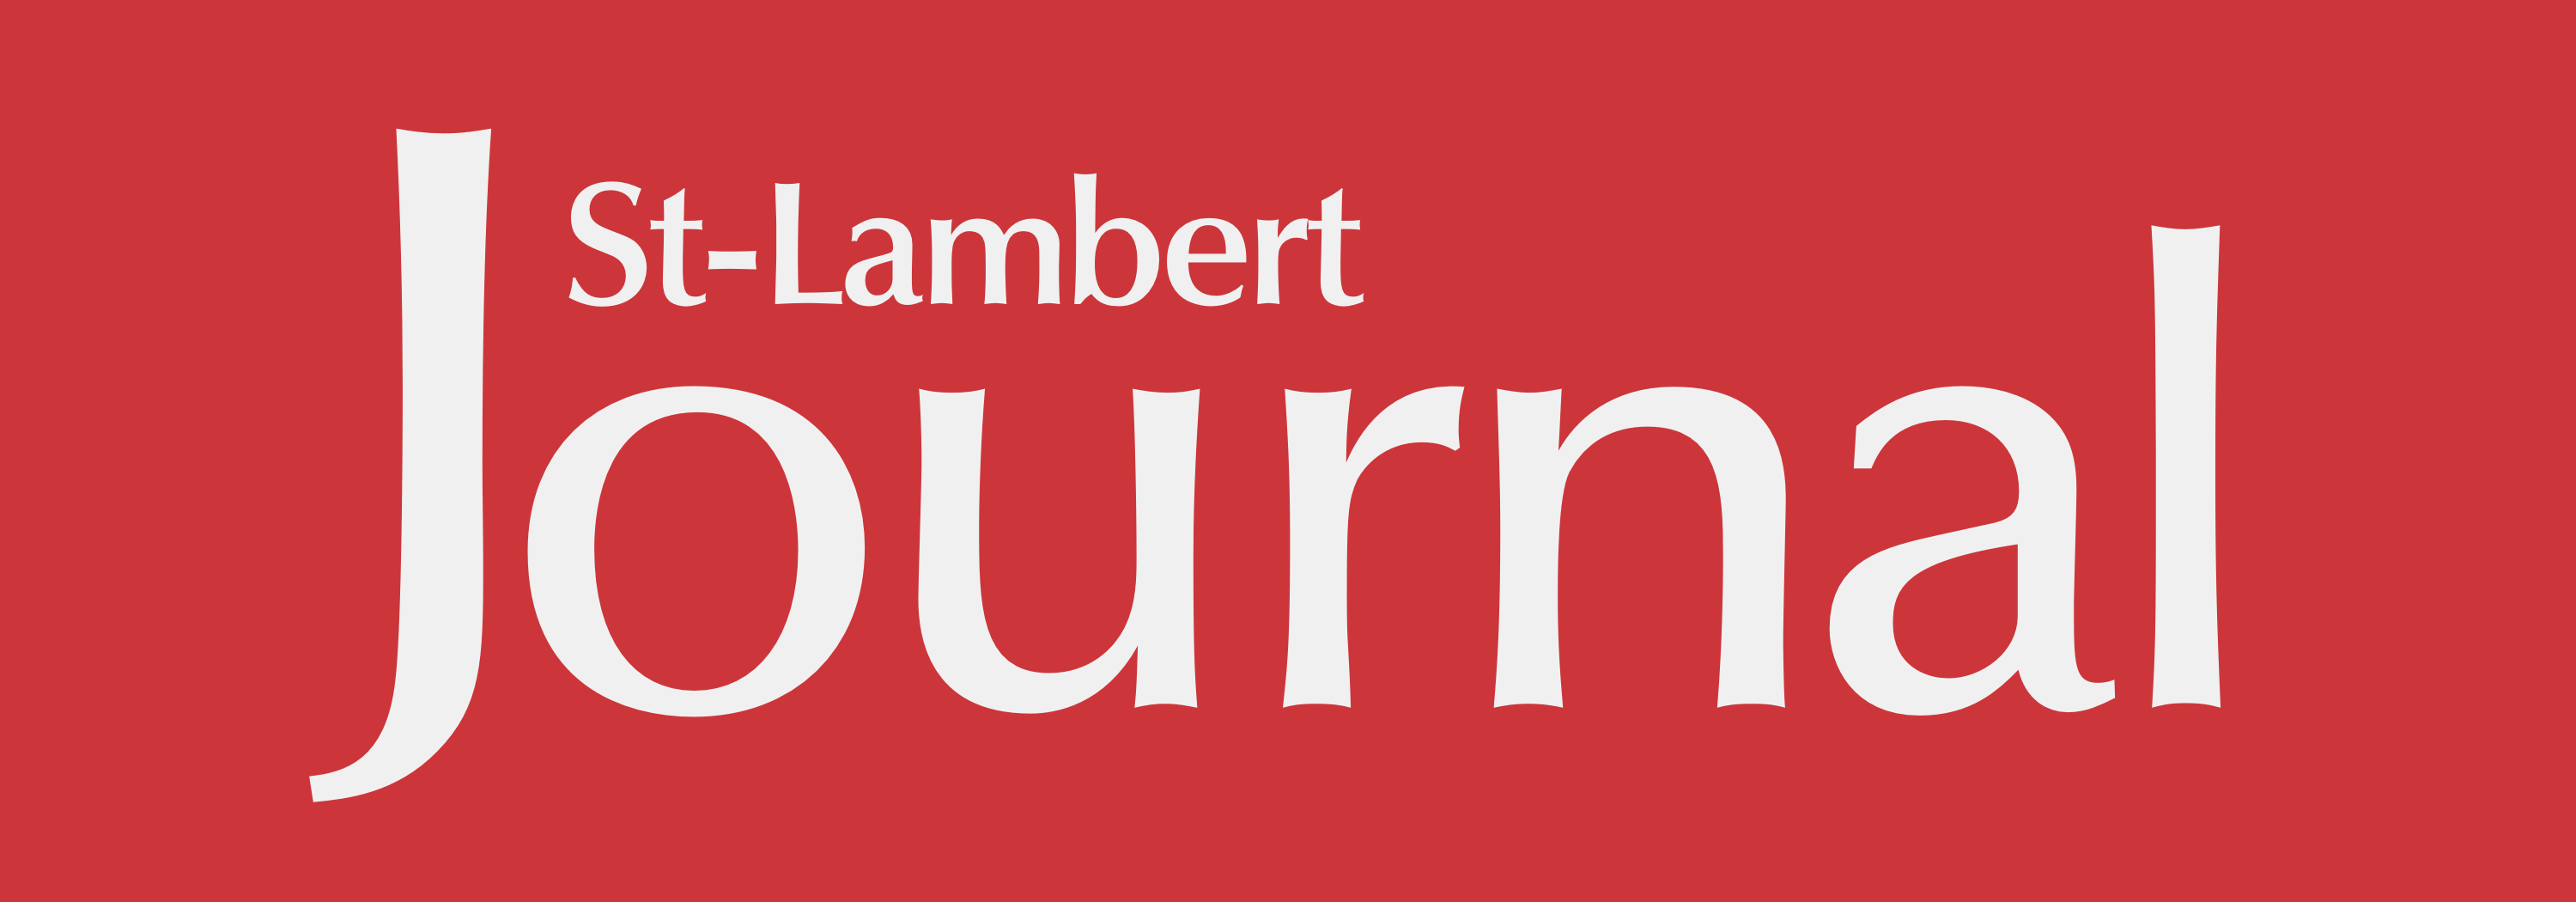 Logo Journal St-Lambert